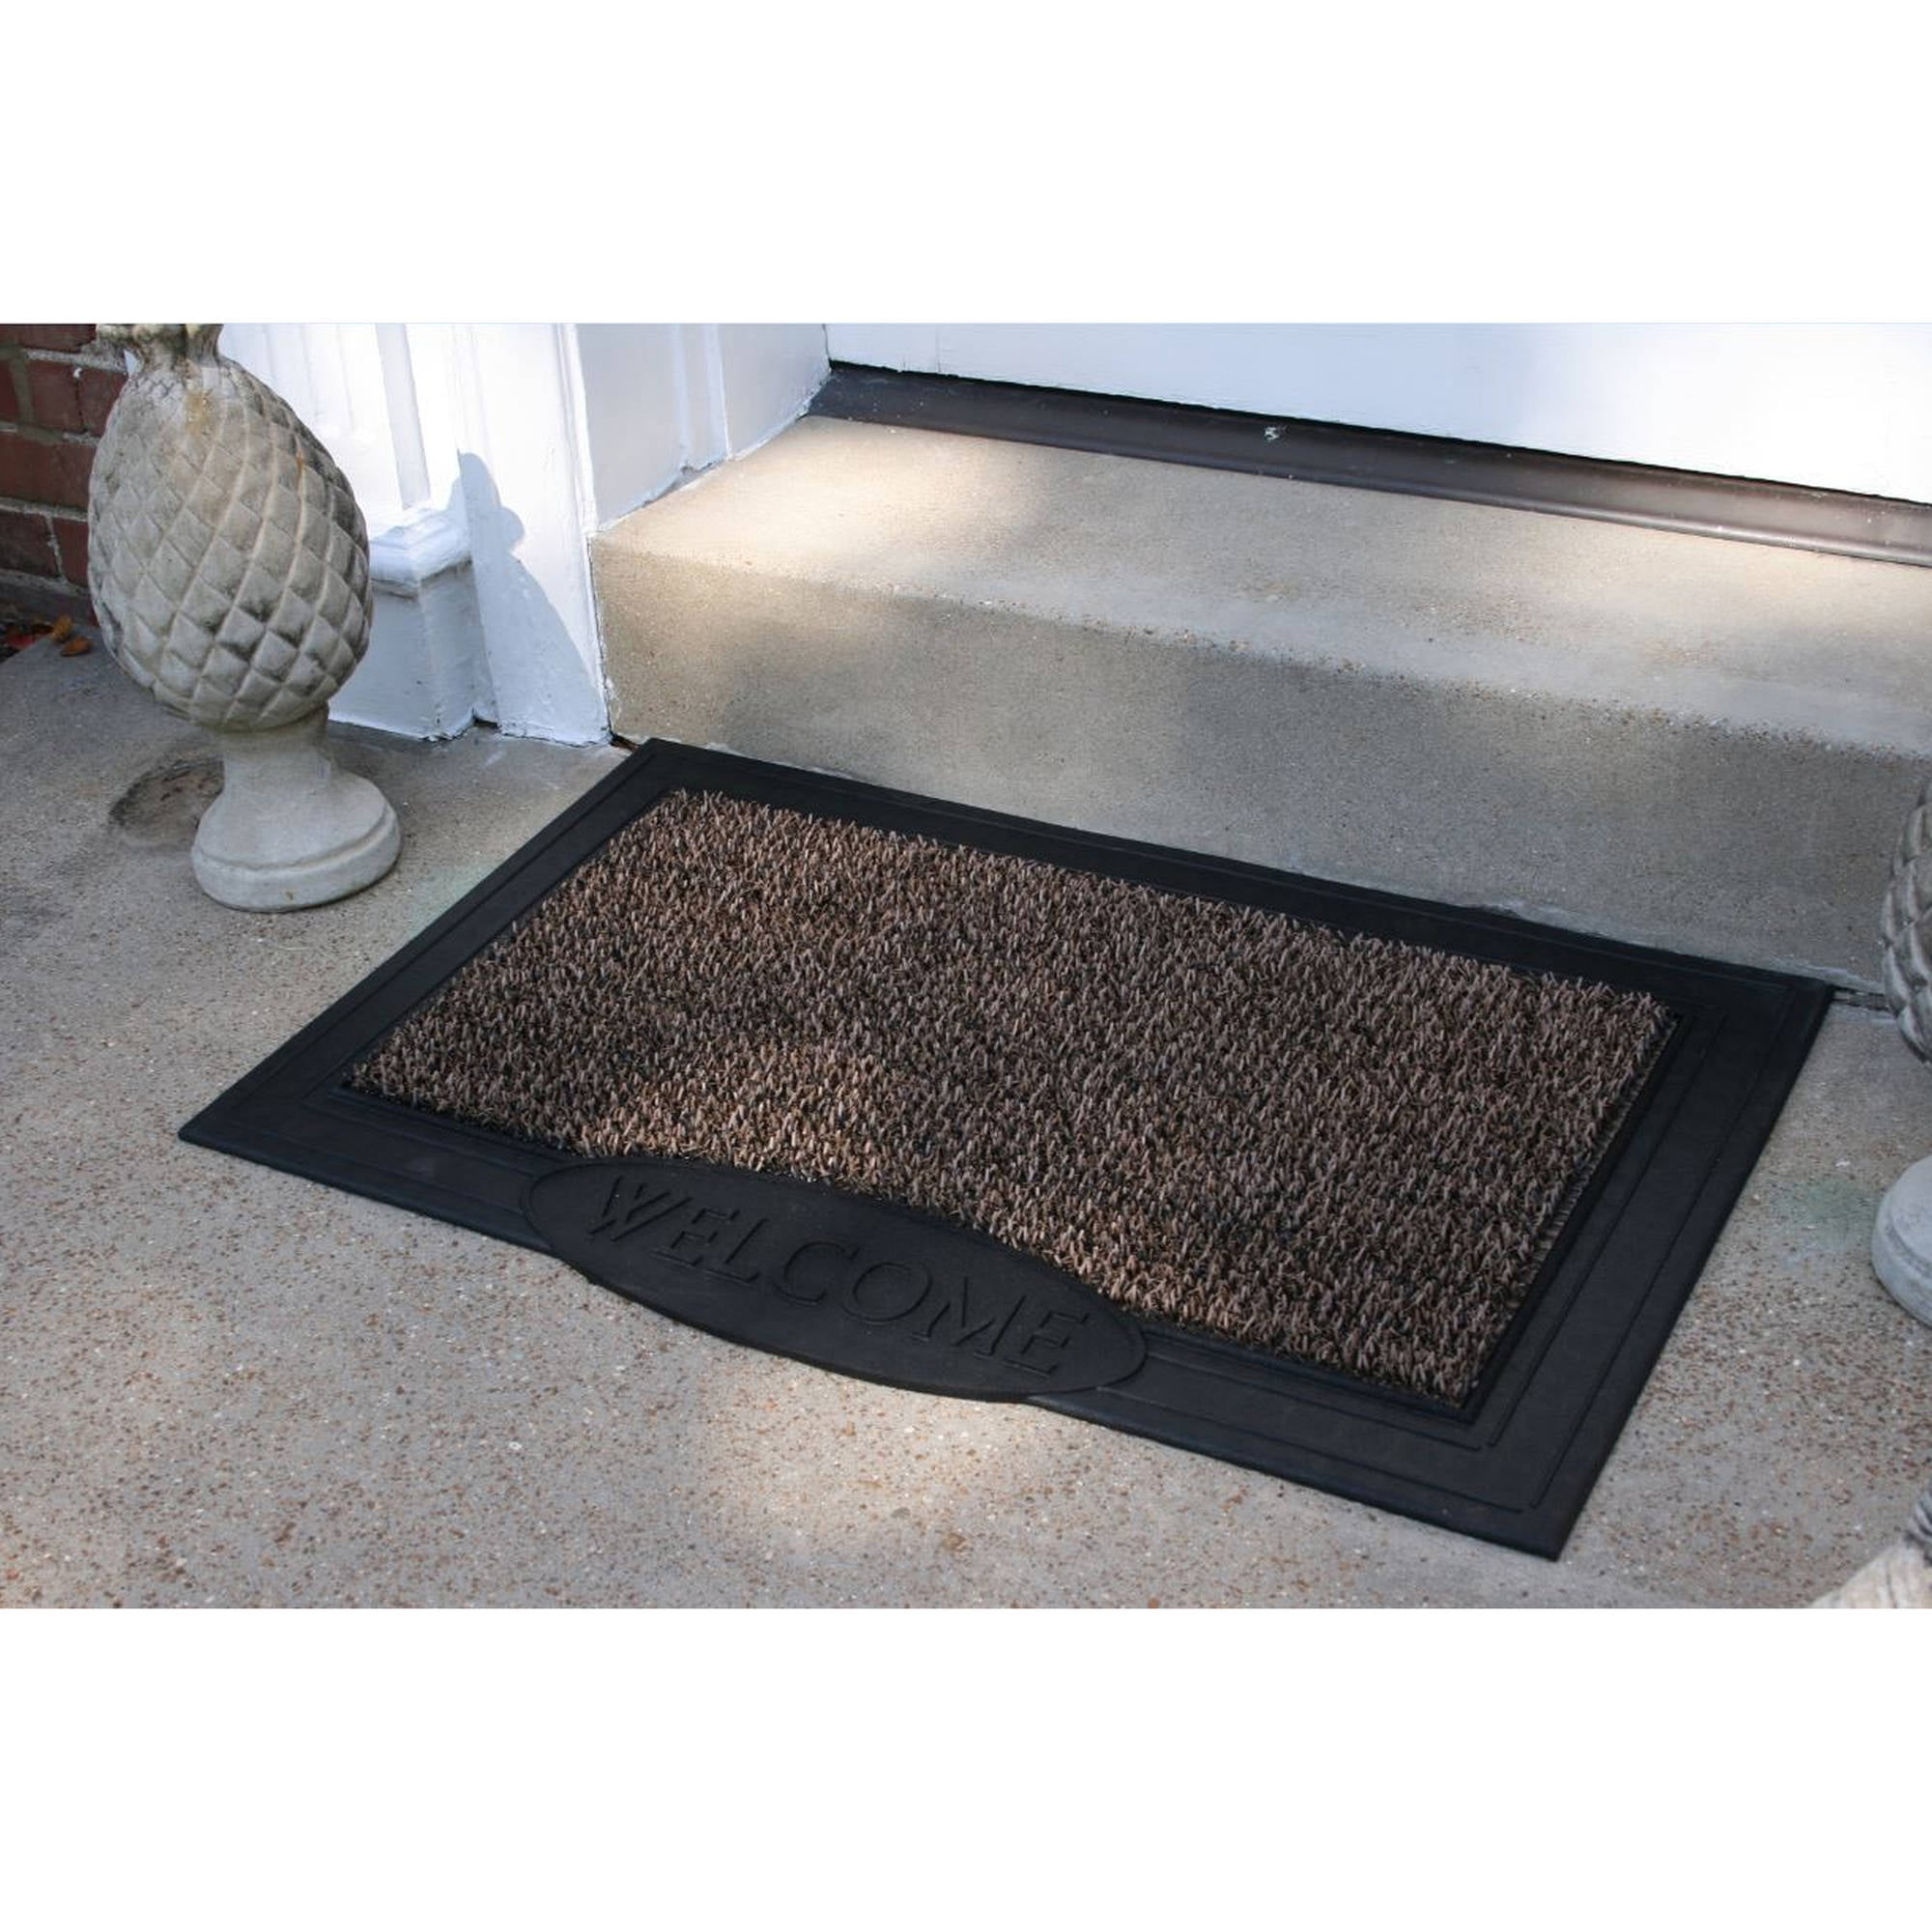 Astro Turf Look Doormat Outdoor Door Mat Scraper Mat Home Entrance Condor Mat 